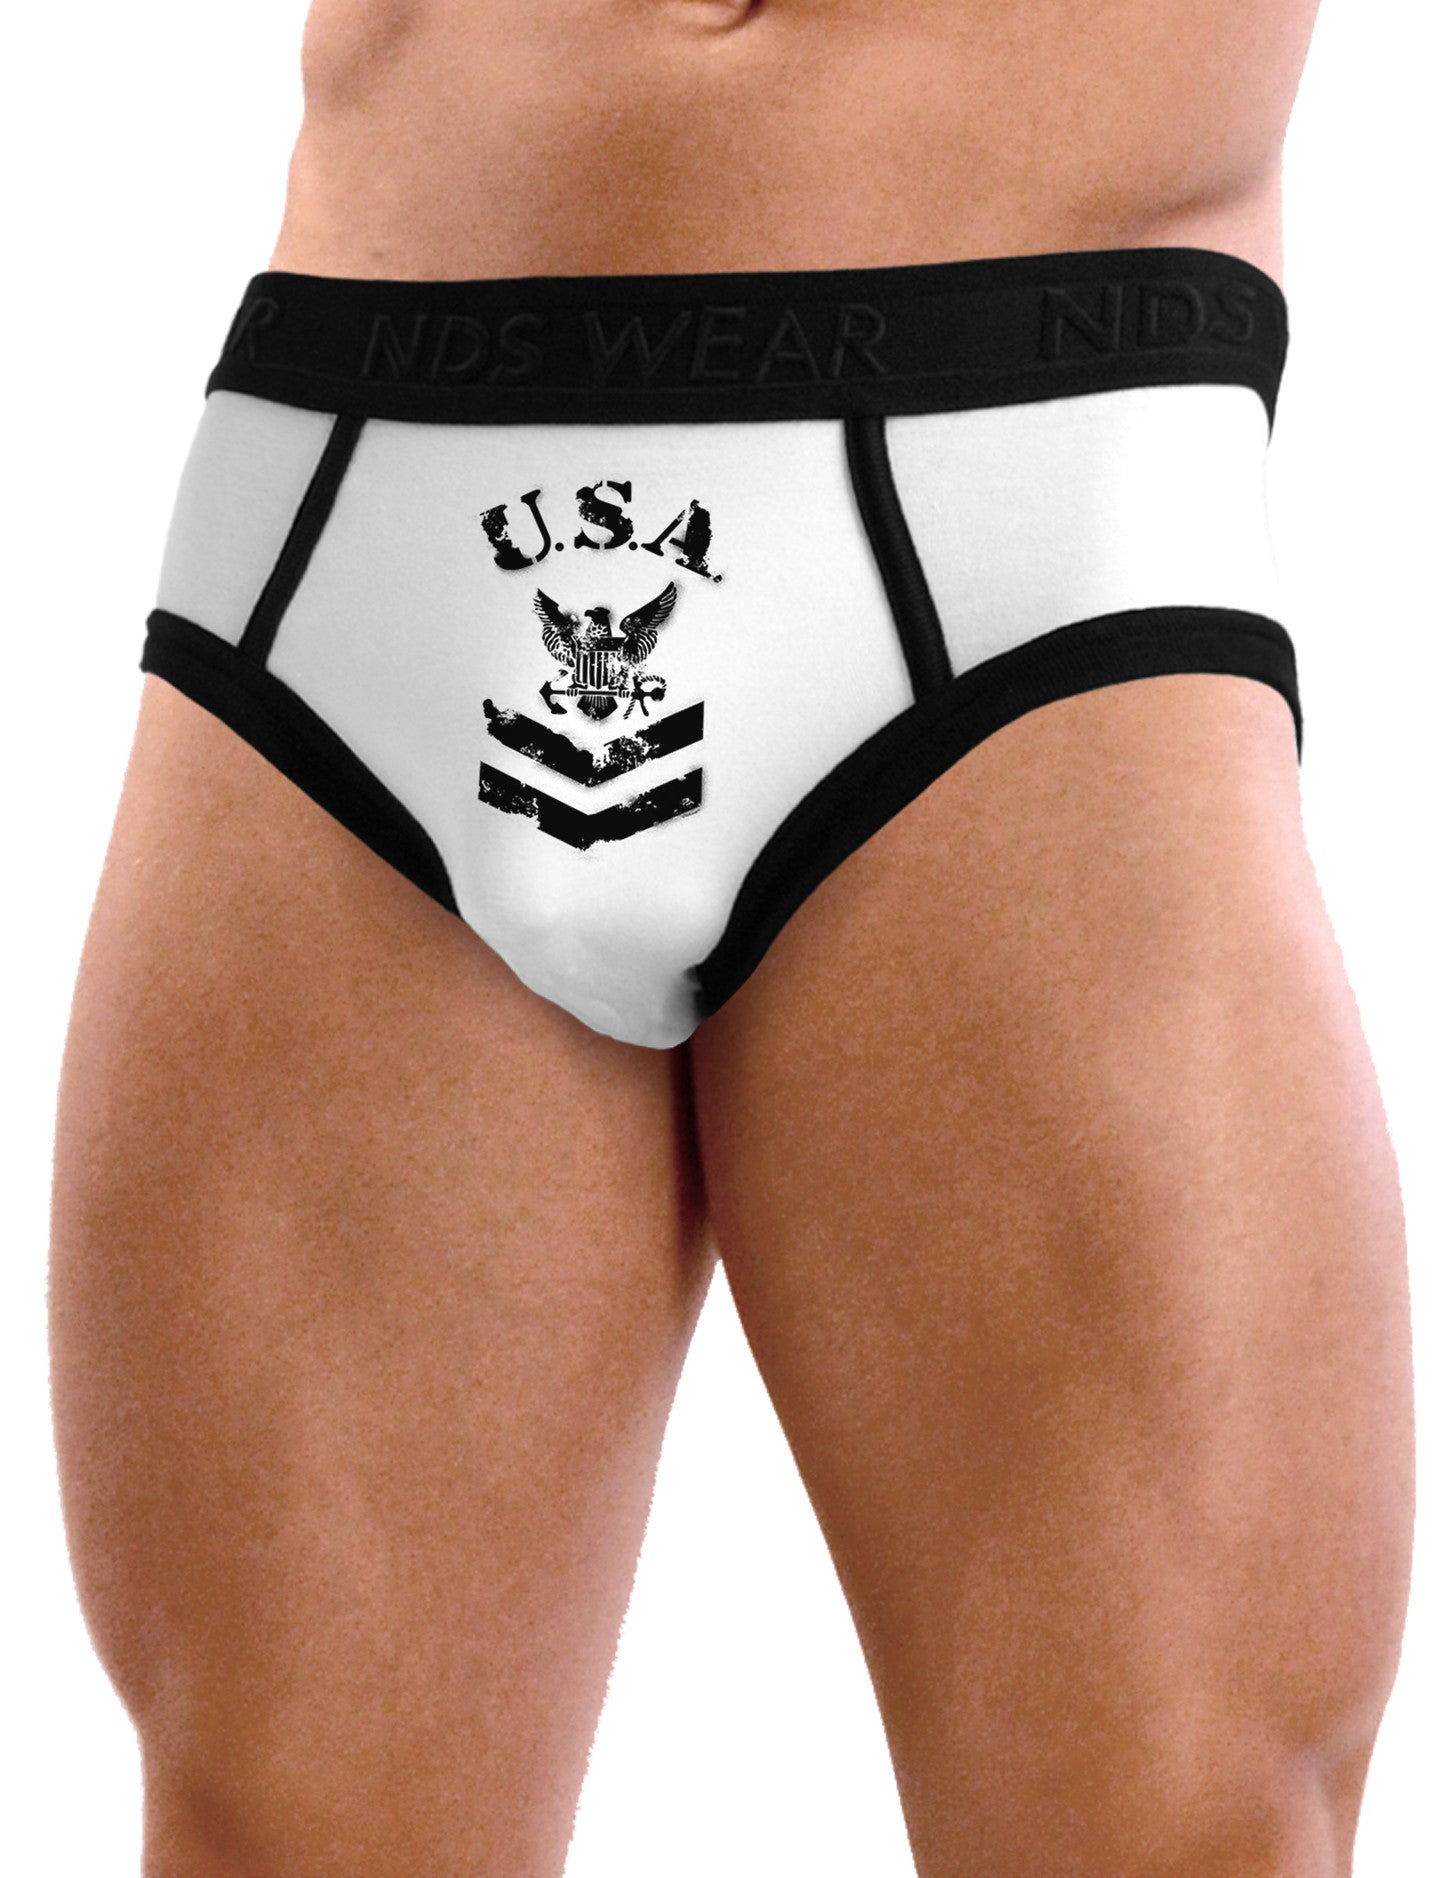 USA Military Navy Stencil Logo Mens NDS Wear Briefs Underwear - Davson Sales